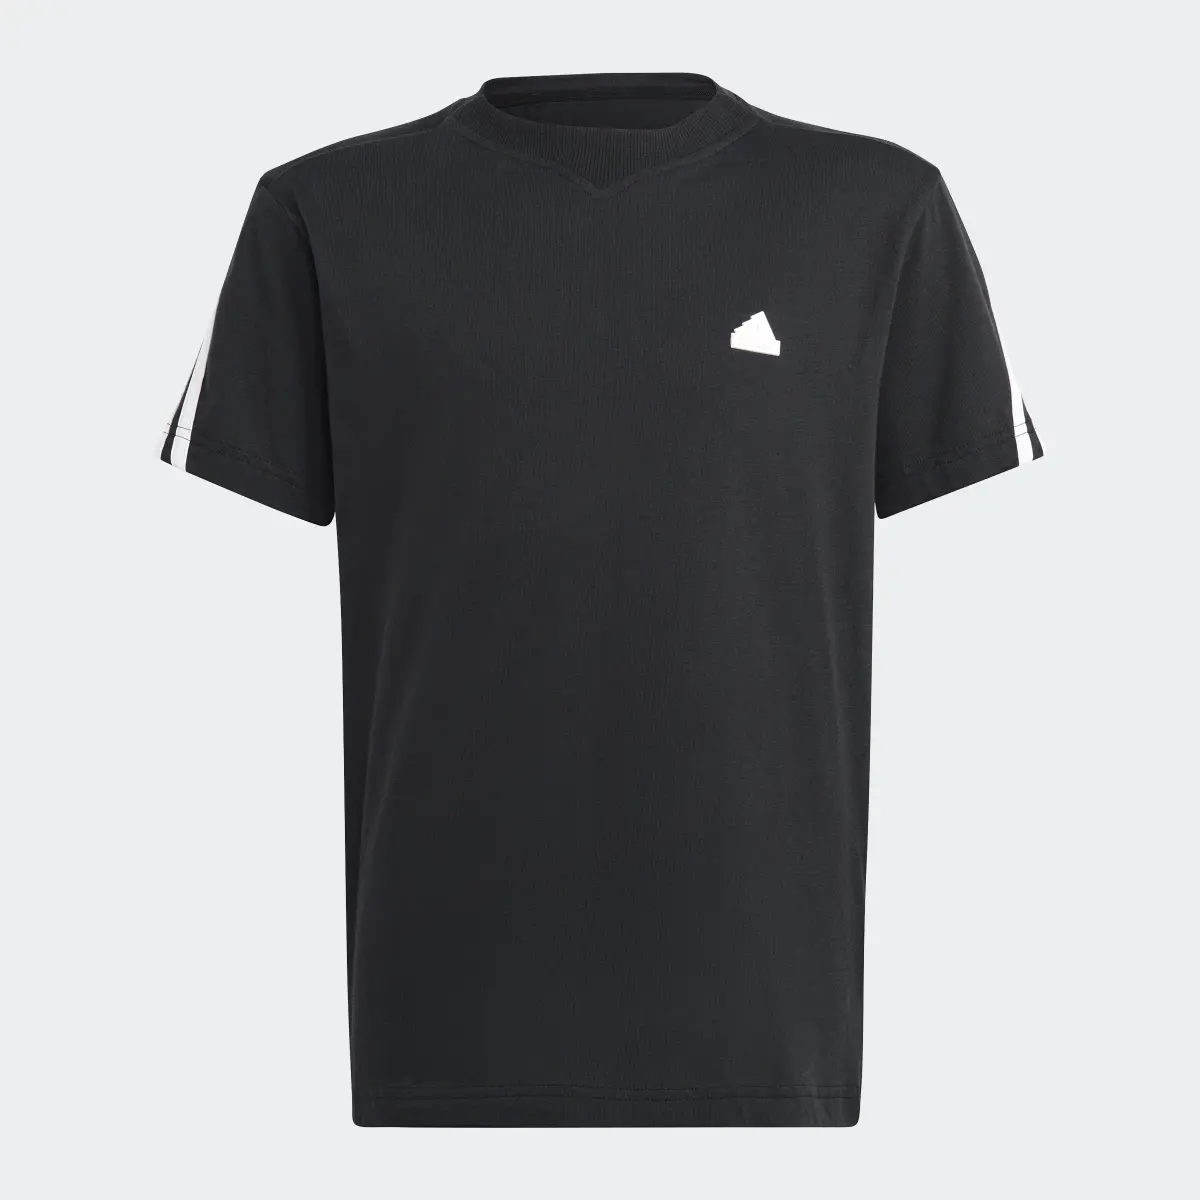 Adidas Future Icons 3-Streifen T-Shirt. 3